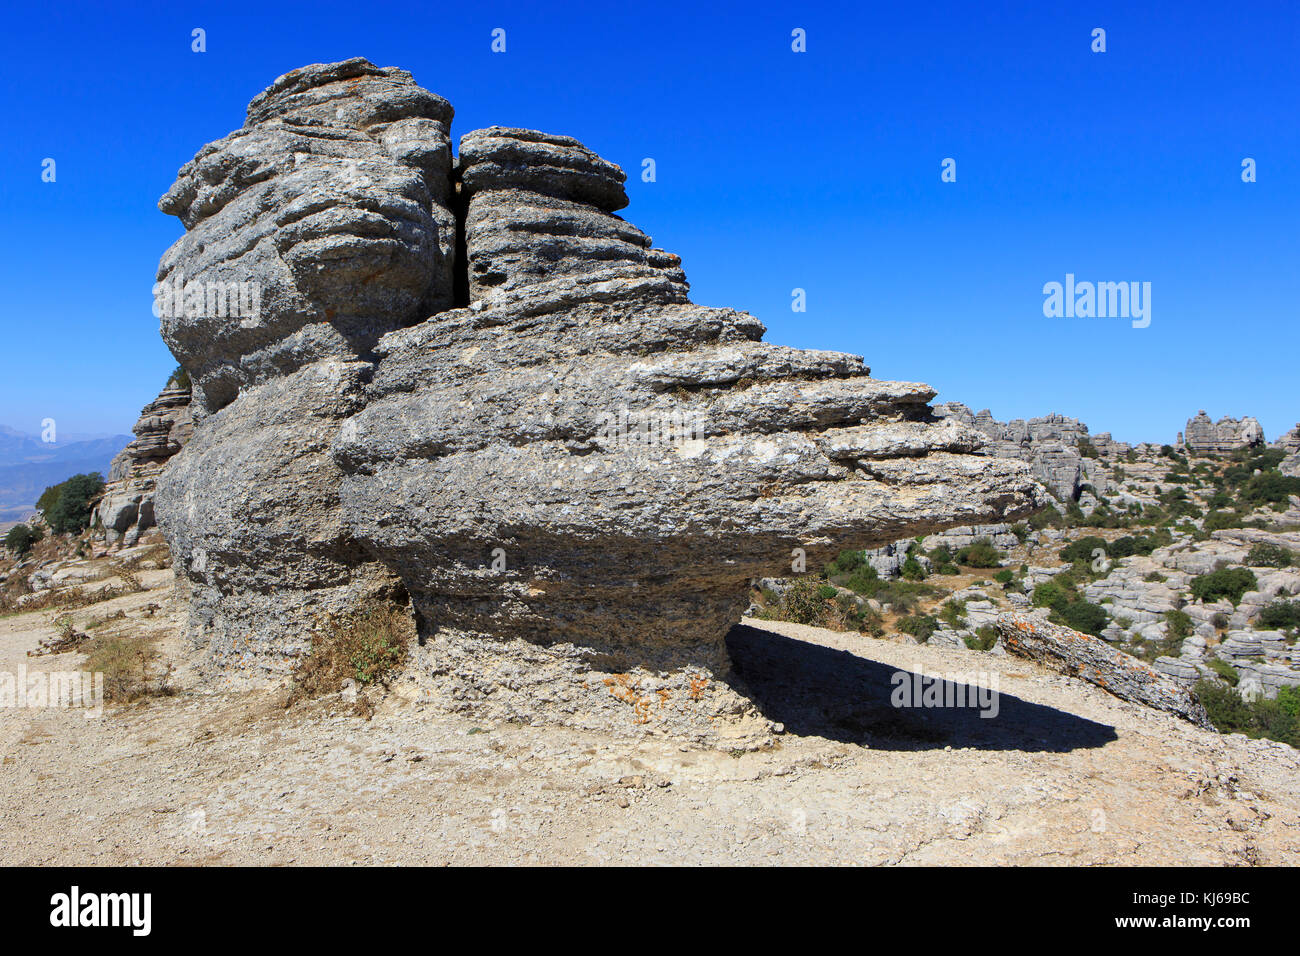 Une formation de roche karstique à El Torcal de Antequera, réserve naturelle située au sud de la ville d'Antequera, Espagne Banque D'Images